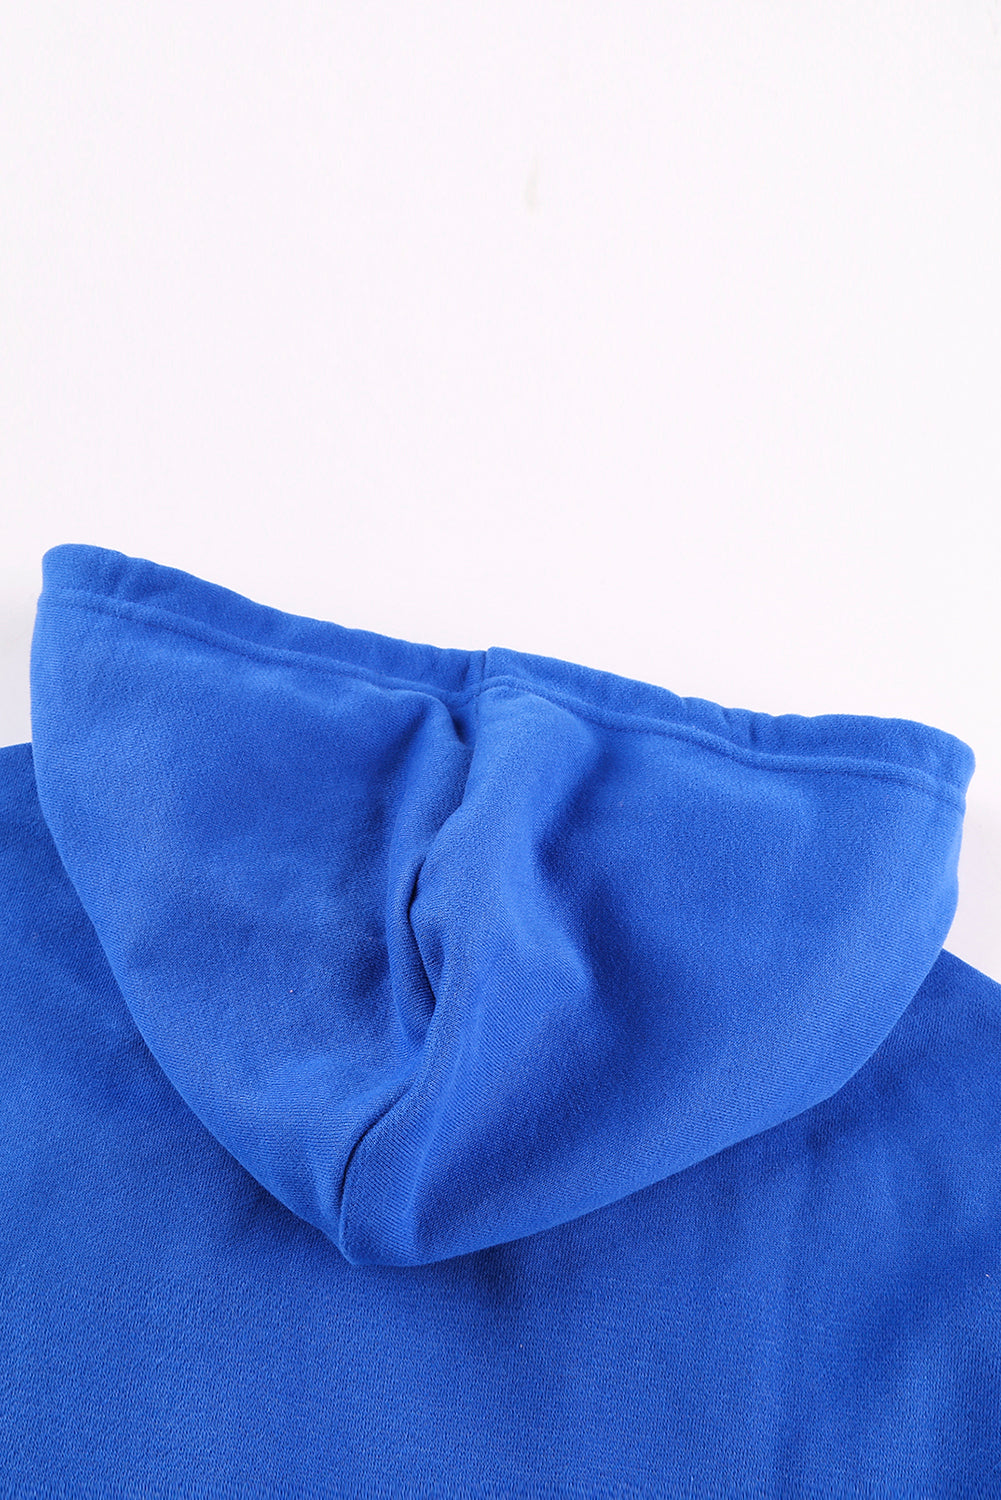 Veste à capuche zippée bleue